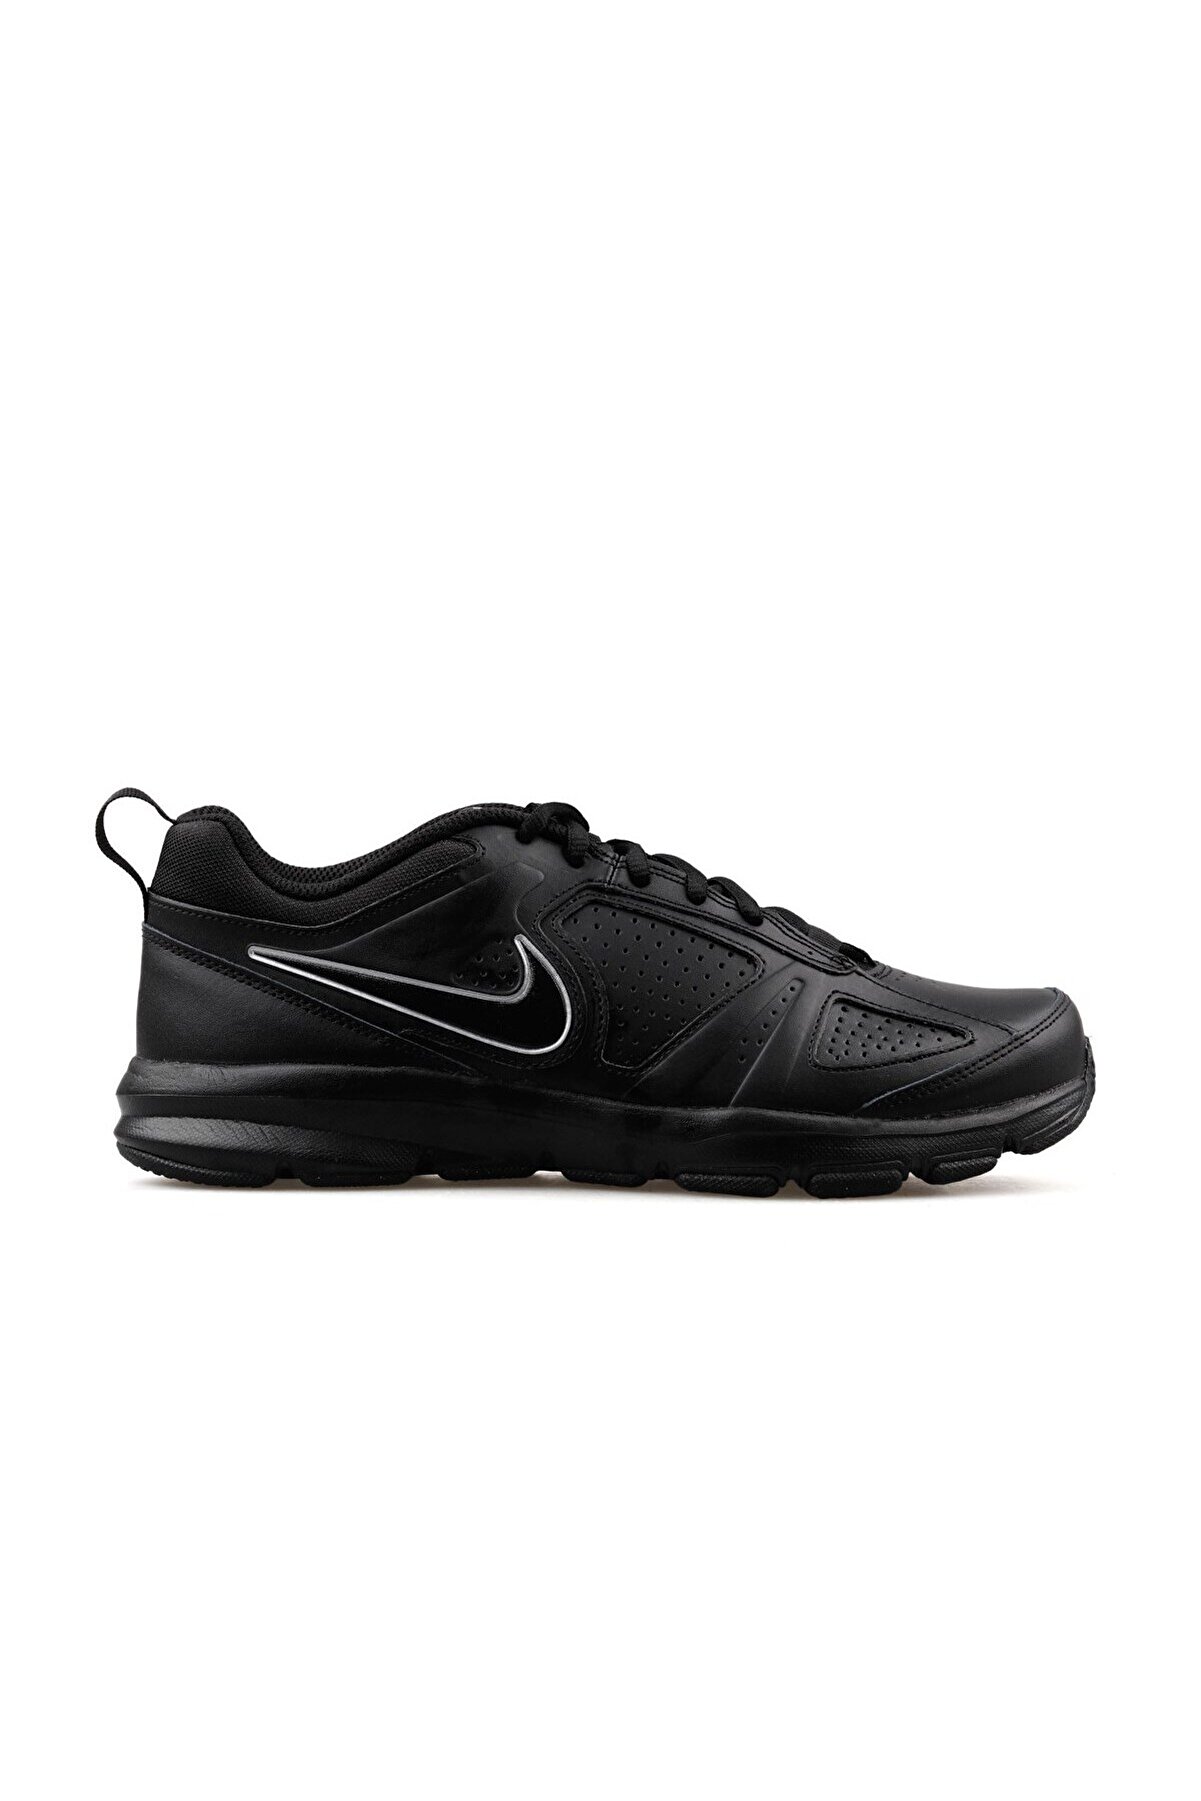 Nike T-lite Xi 616544-007 Spor Ayakkabı Siyah